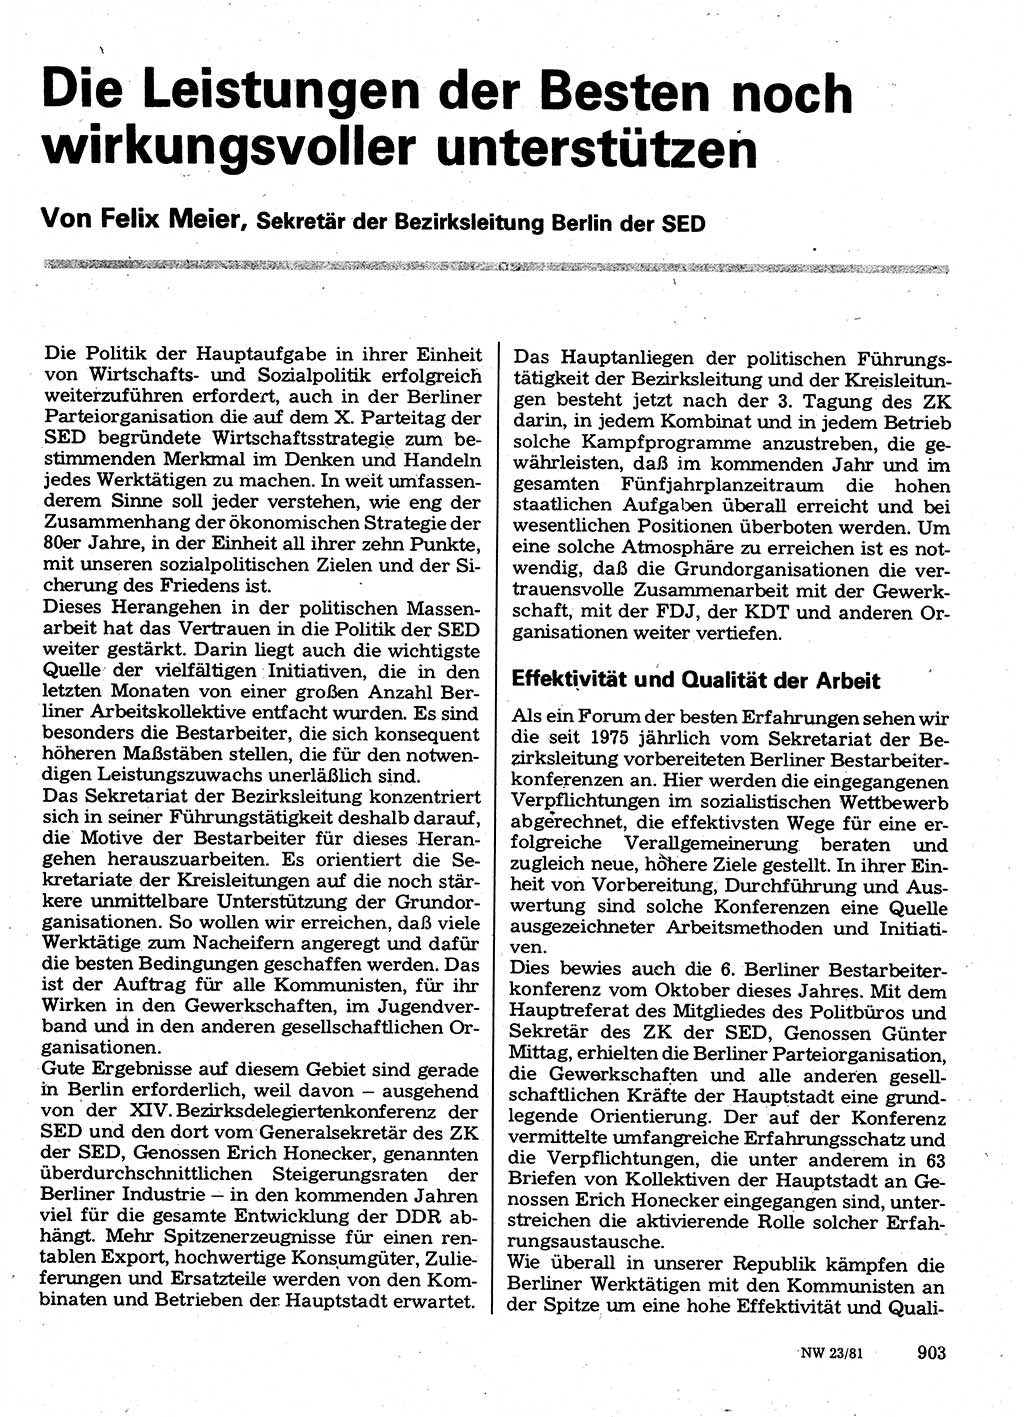 Neuer Weg (NW), Organ des Zentralkomitees (ZK) der SED (Sozialistische Einheitspartei Deutschlands) für Fragen des Parteilebens, 36. Jahrgang [Deutsche Demokratische Republik (DDR)] 1981, Seite 903 (NW ZK SED DDR 1981, S. 903)